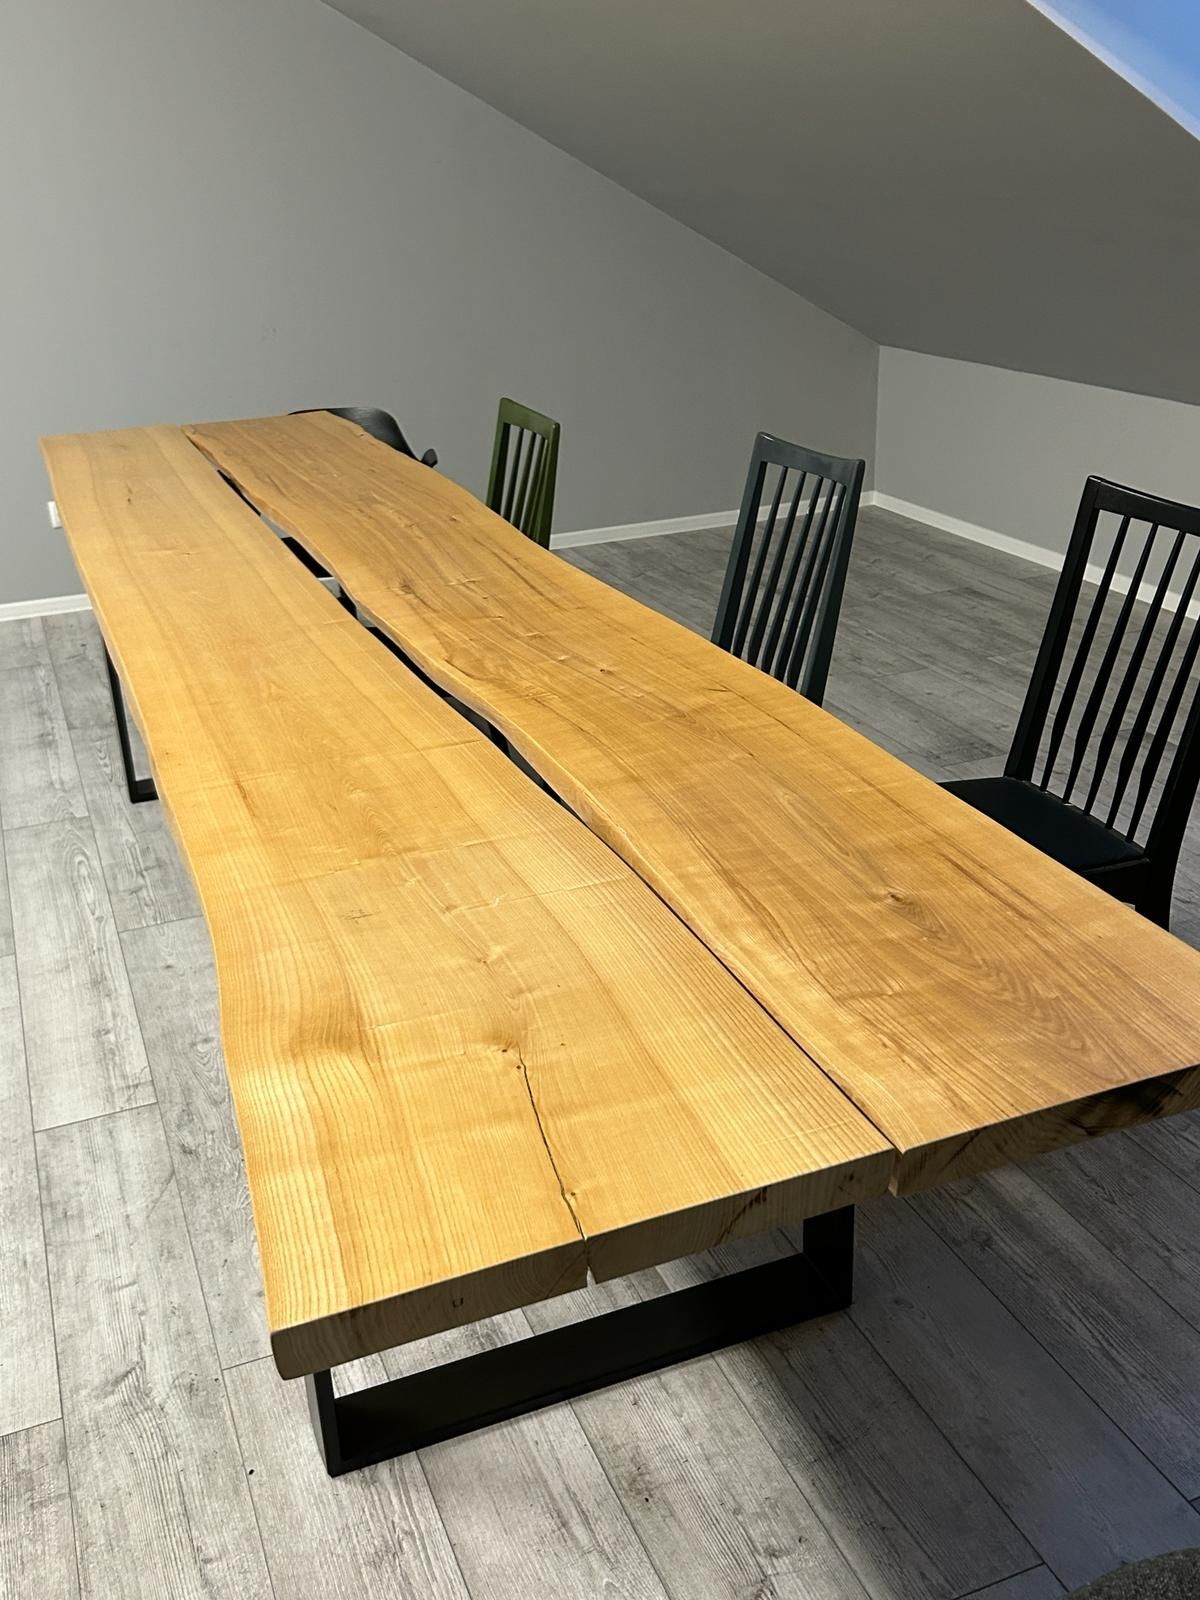 Stół drewniany 3m x 1m